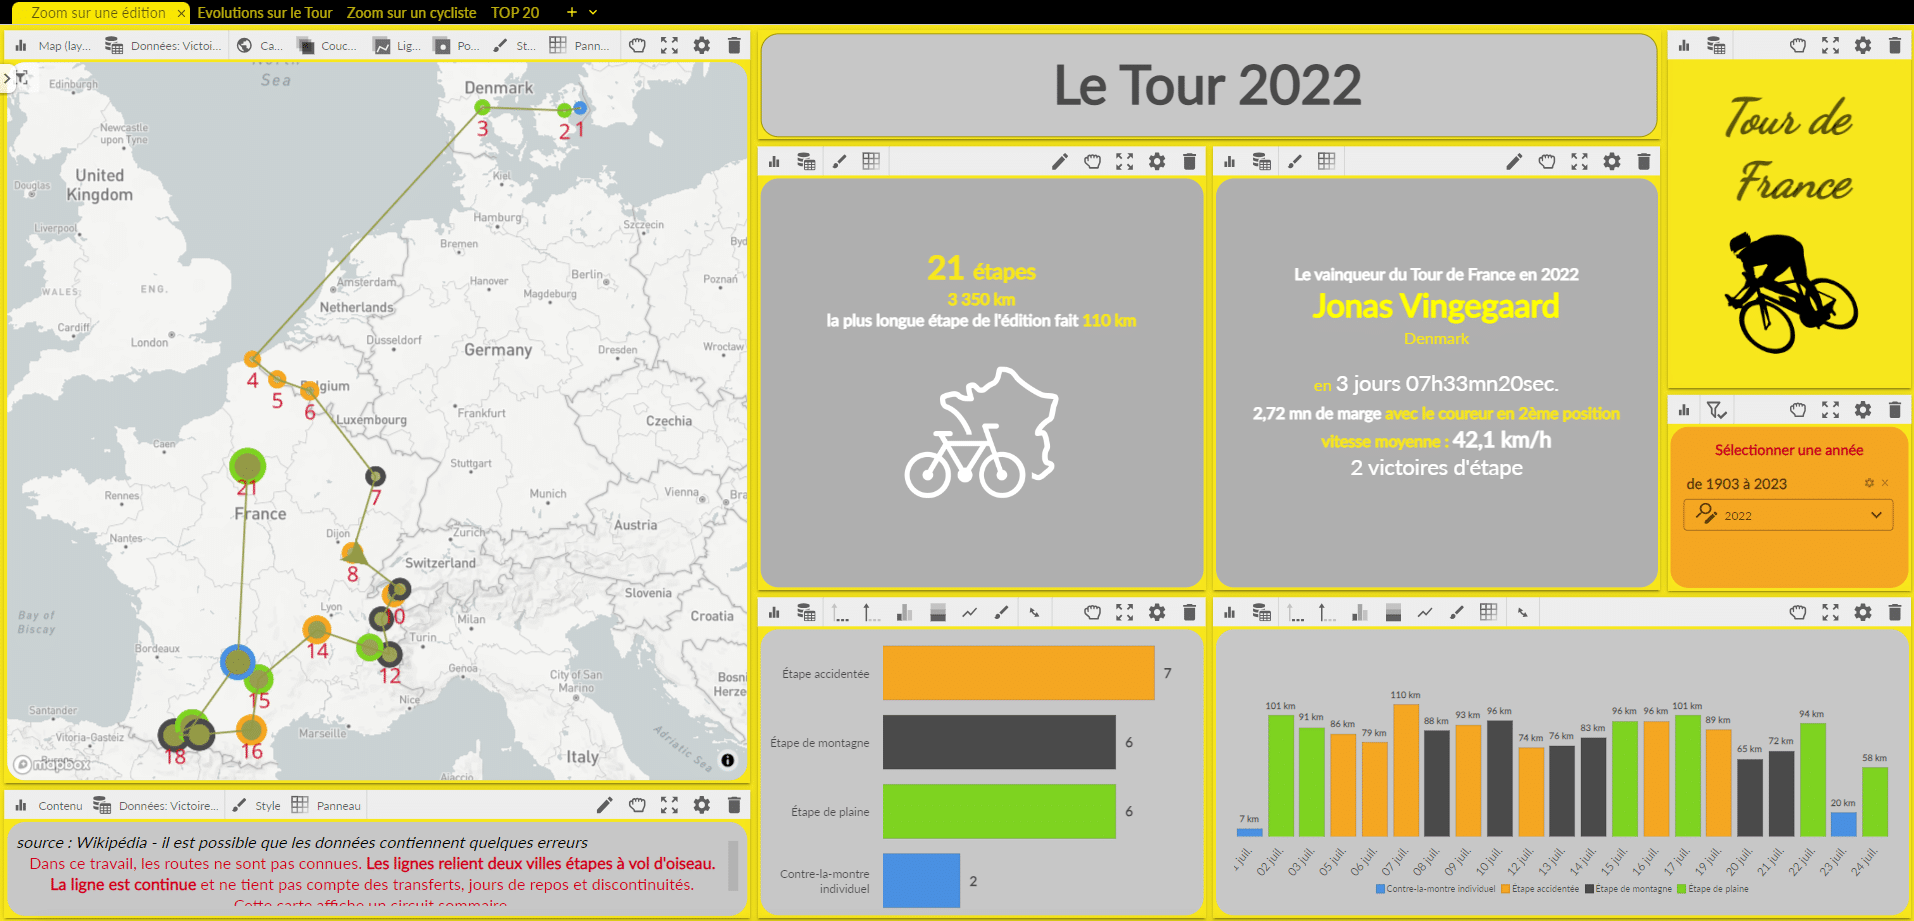 Zoom sur une édition du Tour de France